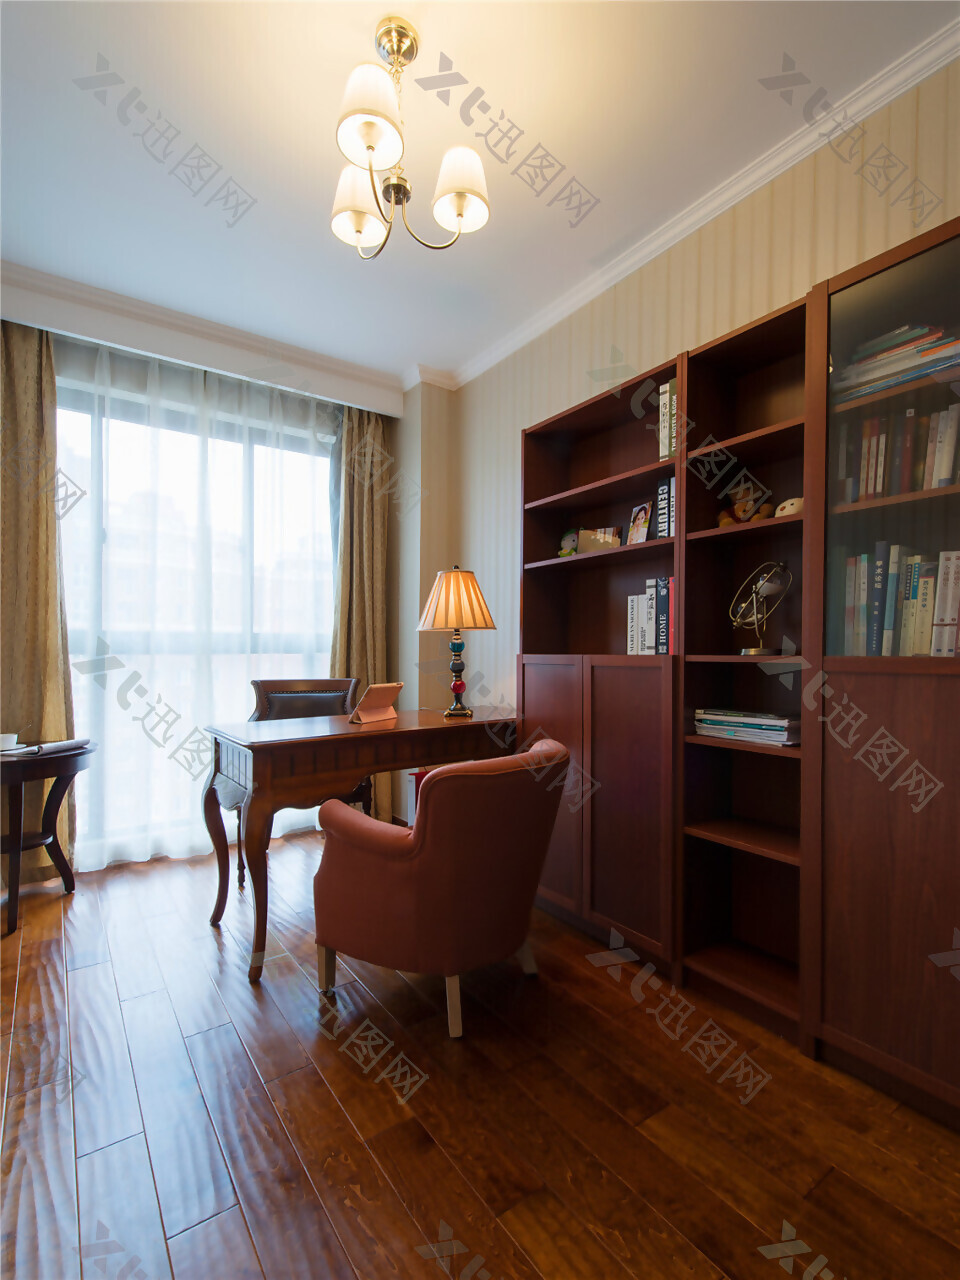 室内设计书房红木书柜效果图